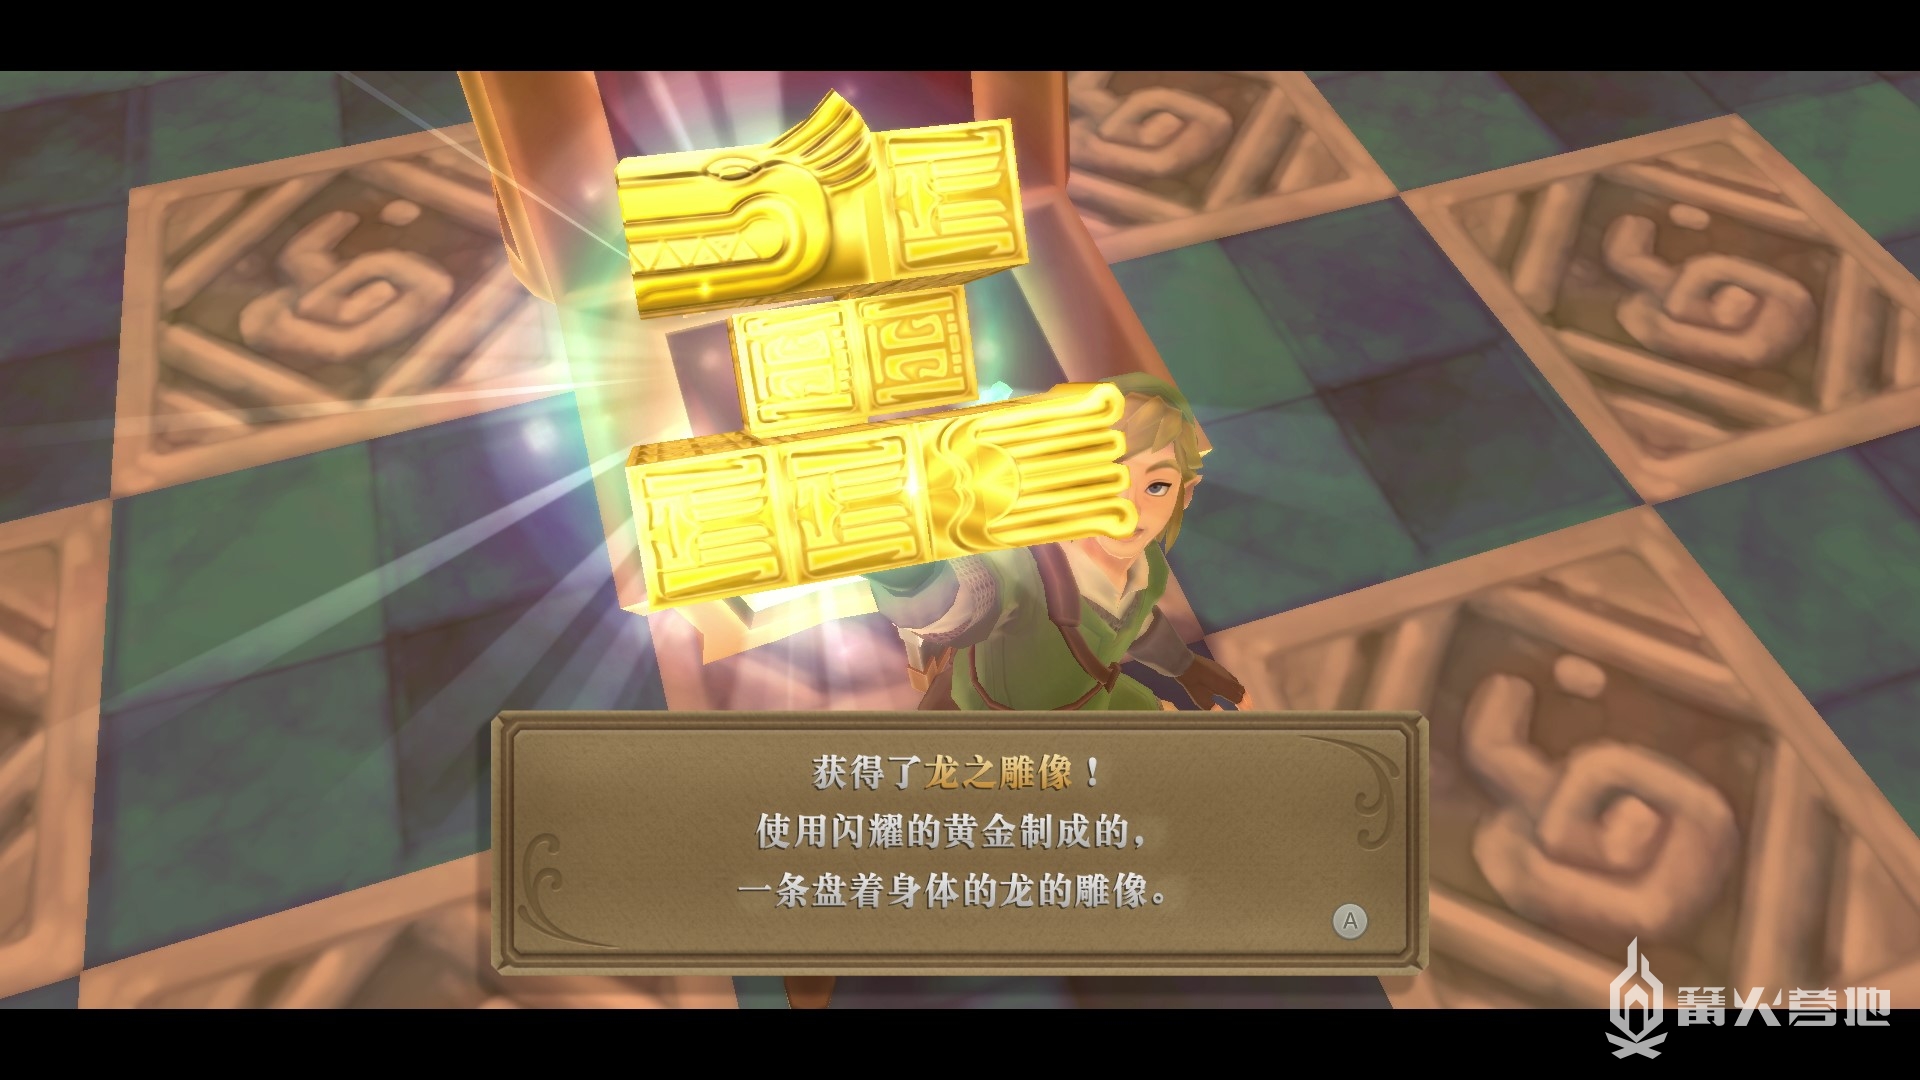 《塞尔达传说 御天之剑 HD》流程攻略05 大地神殿获得黄宝珠石版 - 第16张